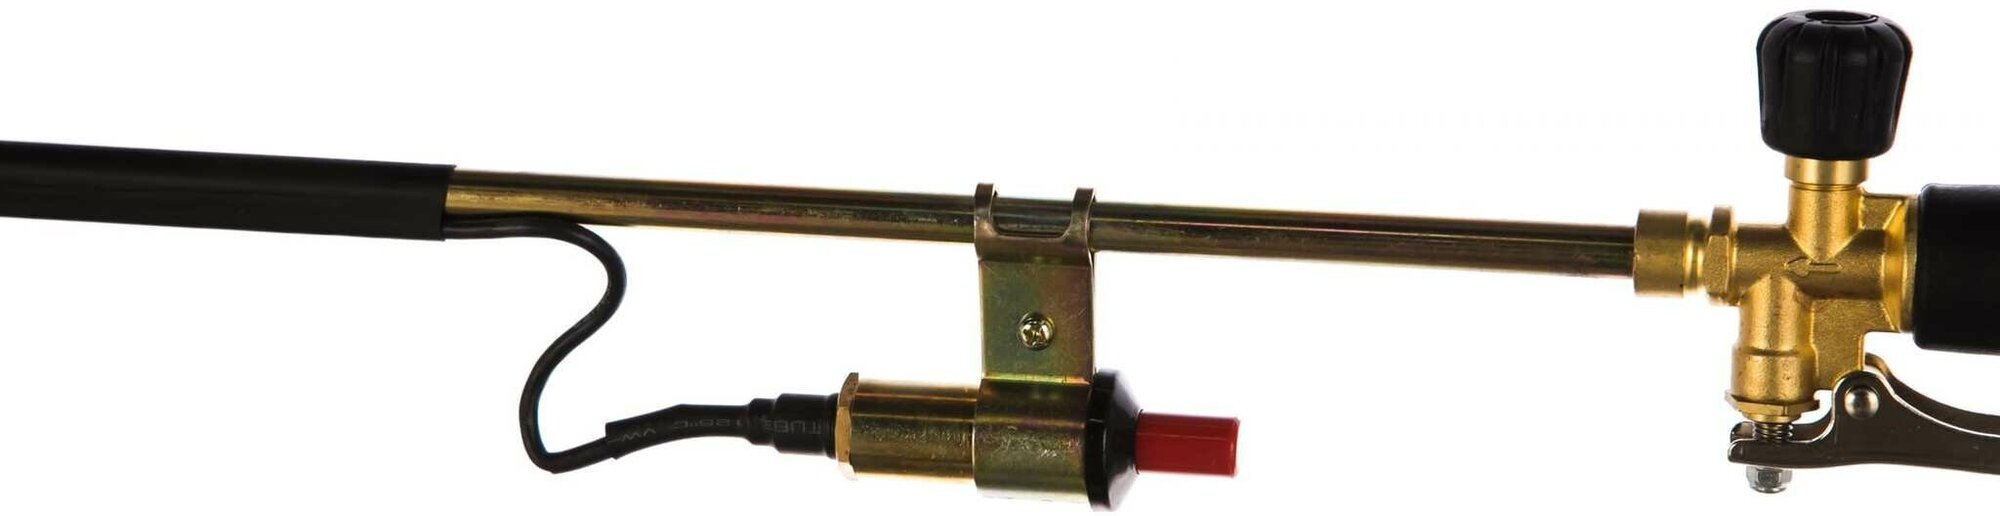 Газосварочная горелка инжекторная Krass ГВ-211-Р Ø50 с пъезоподжигом